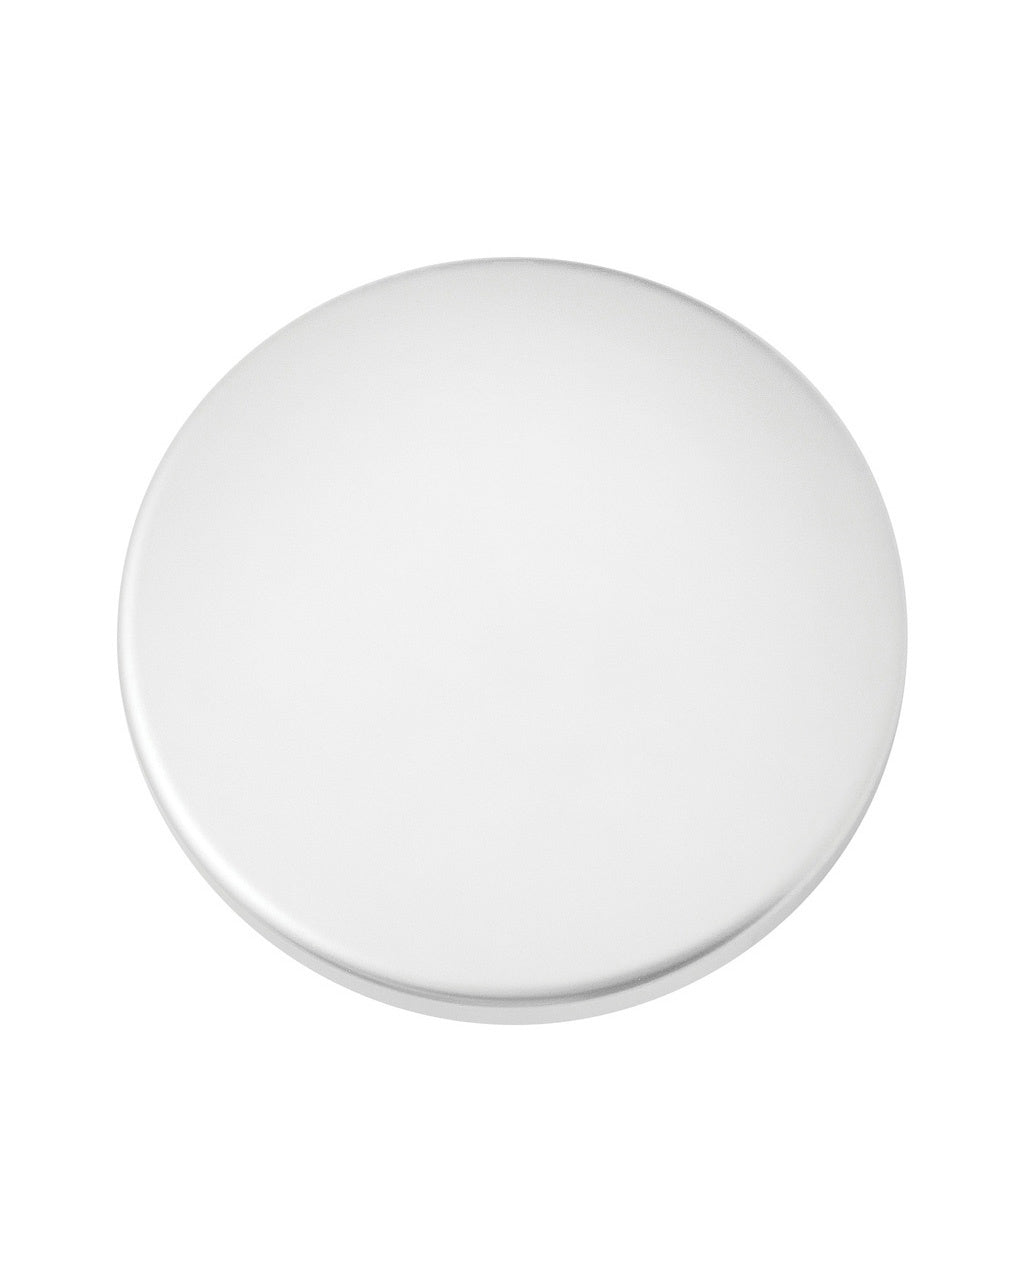 Hinkley Canada - Light Kit Cover - Light Kit Cover - Appliance White- Union Lighting Luminaires Decor